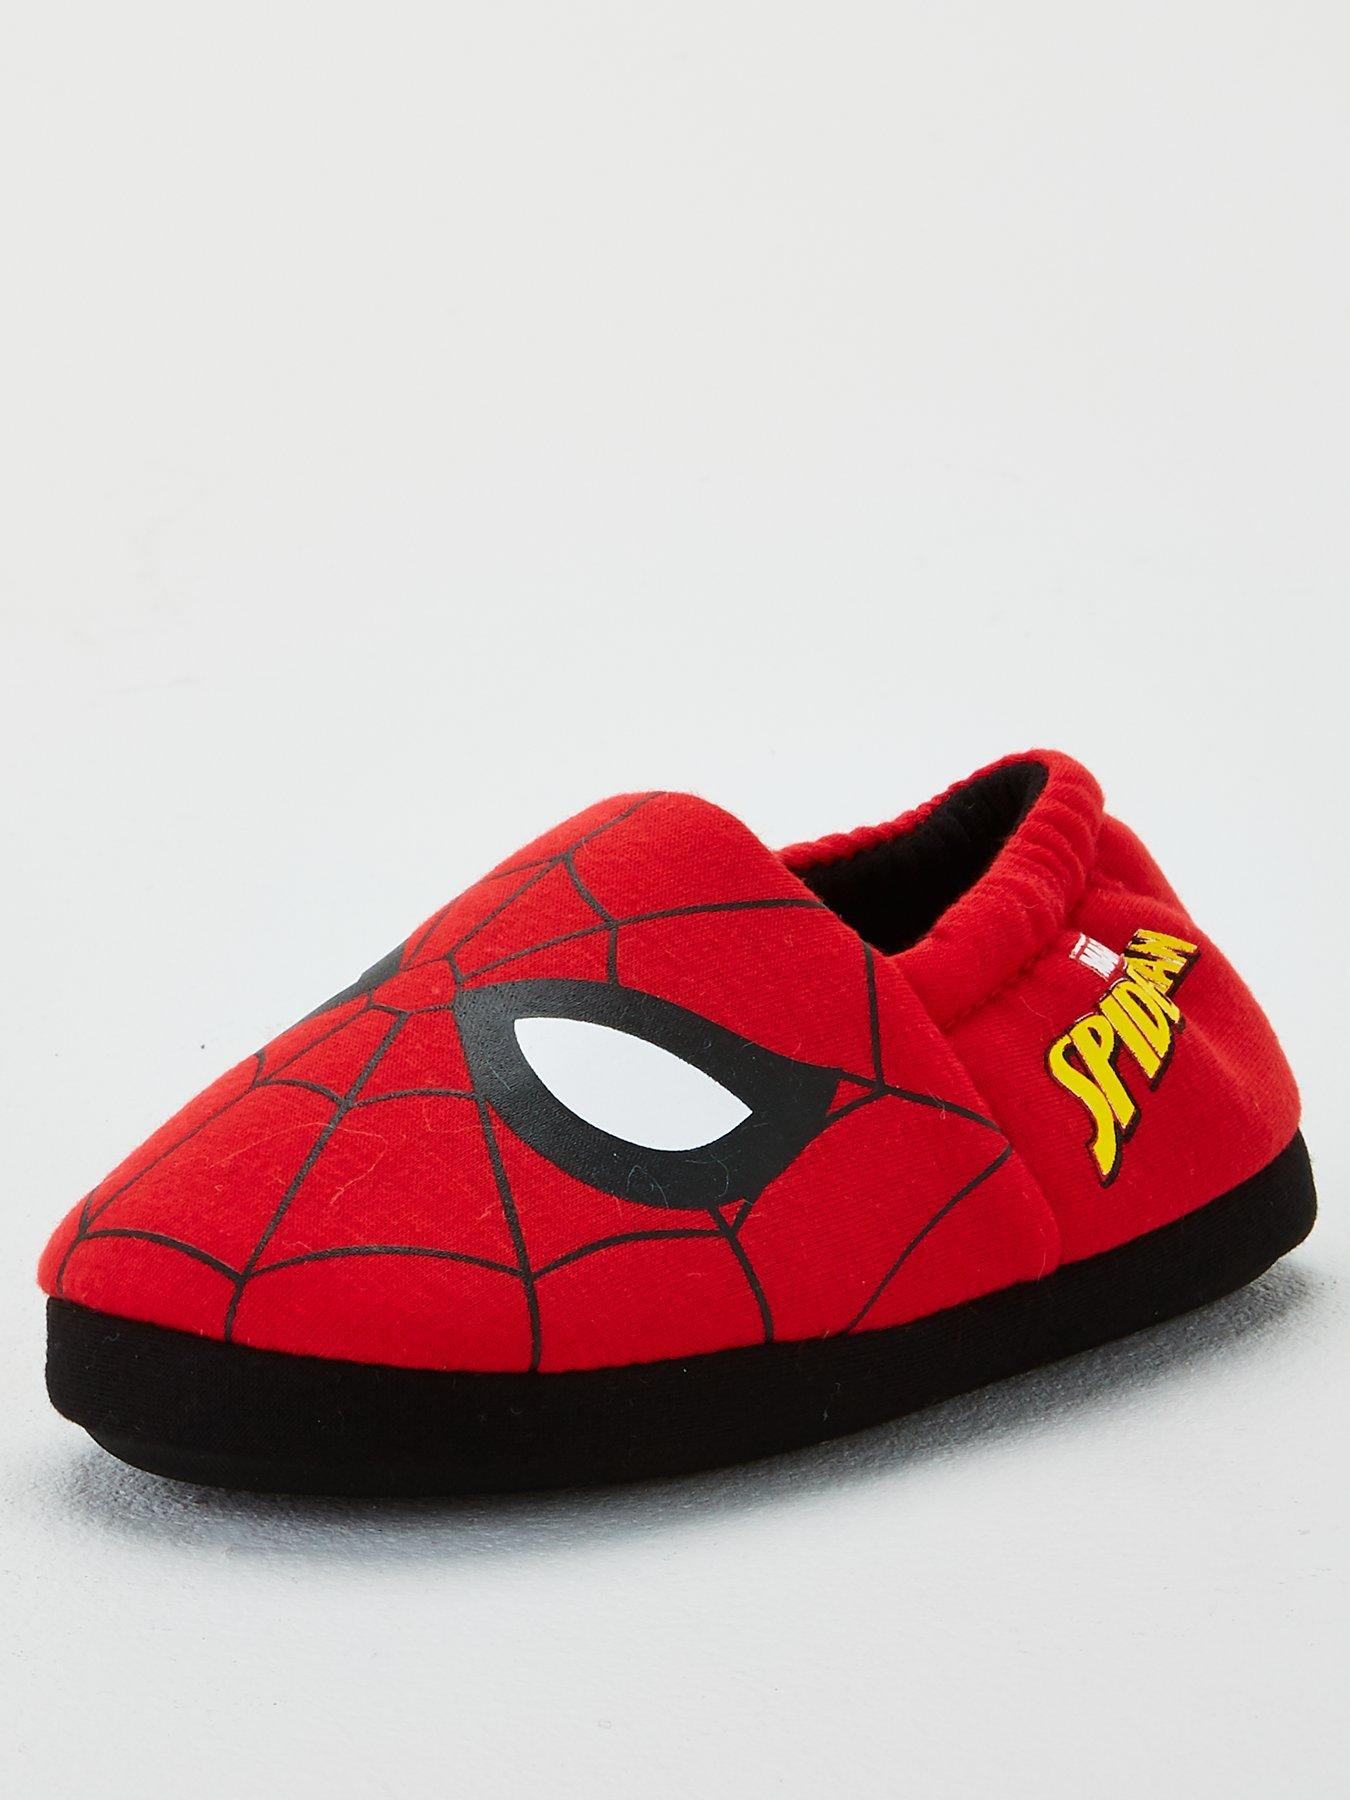 spider man slippers